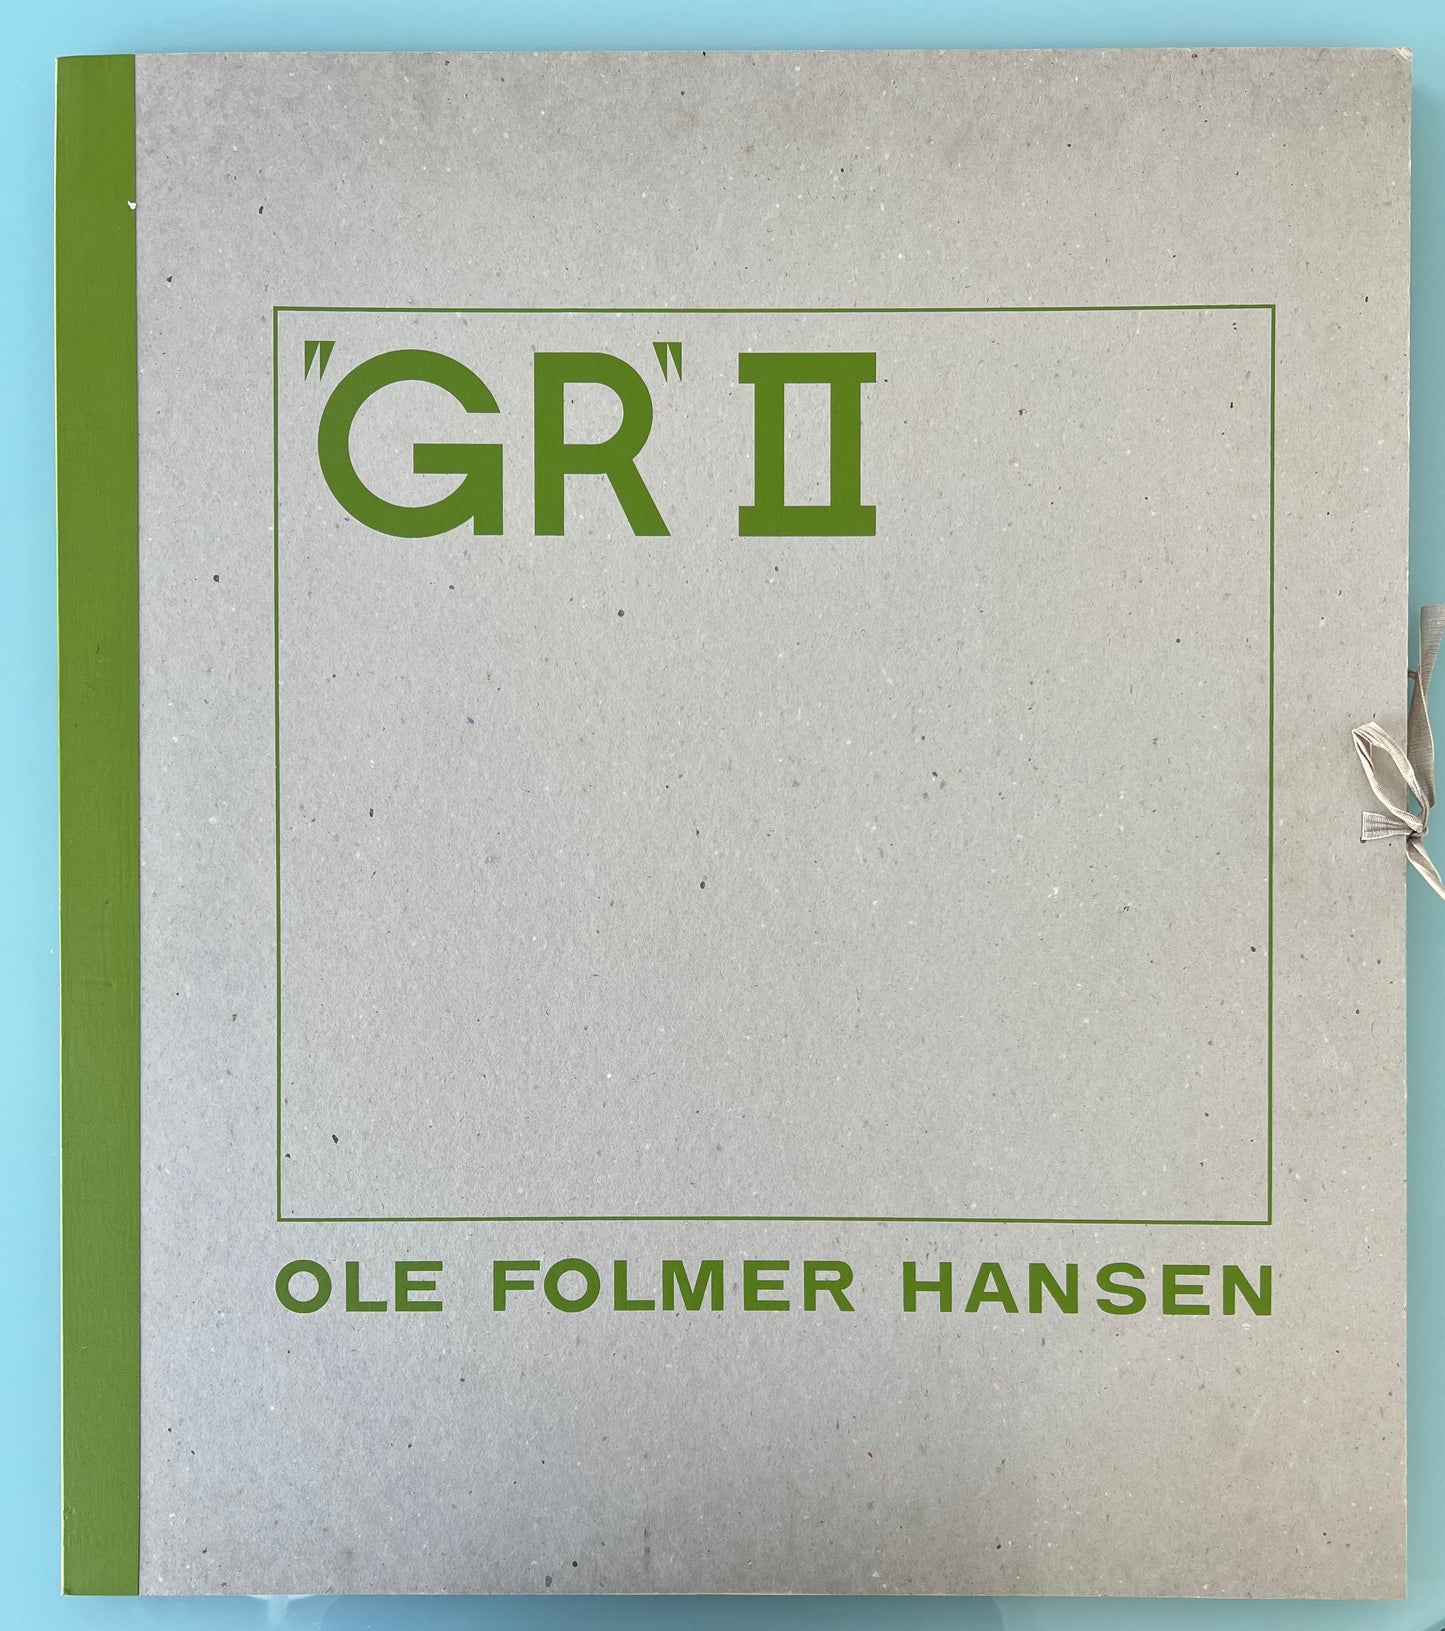 Ole Folmer Hansen. “GR II”, suite of 6 screenprints